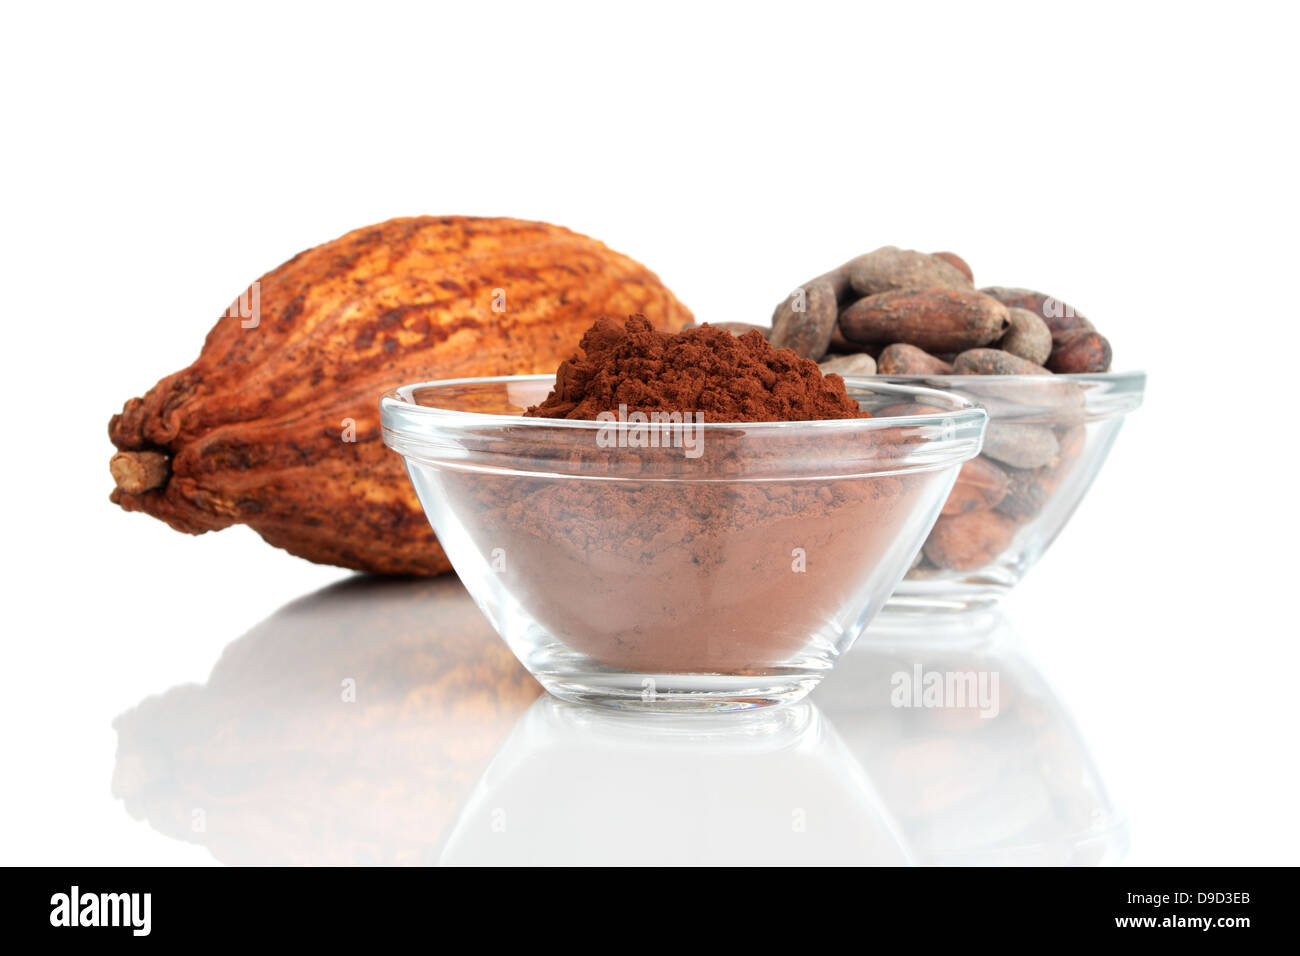 Les fèves de cacao et poudre de cacao Banque D'Images